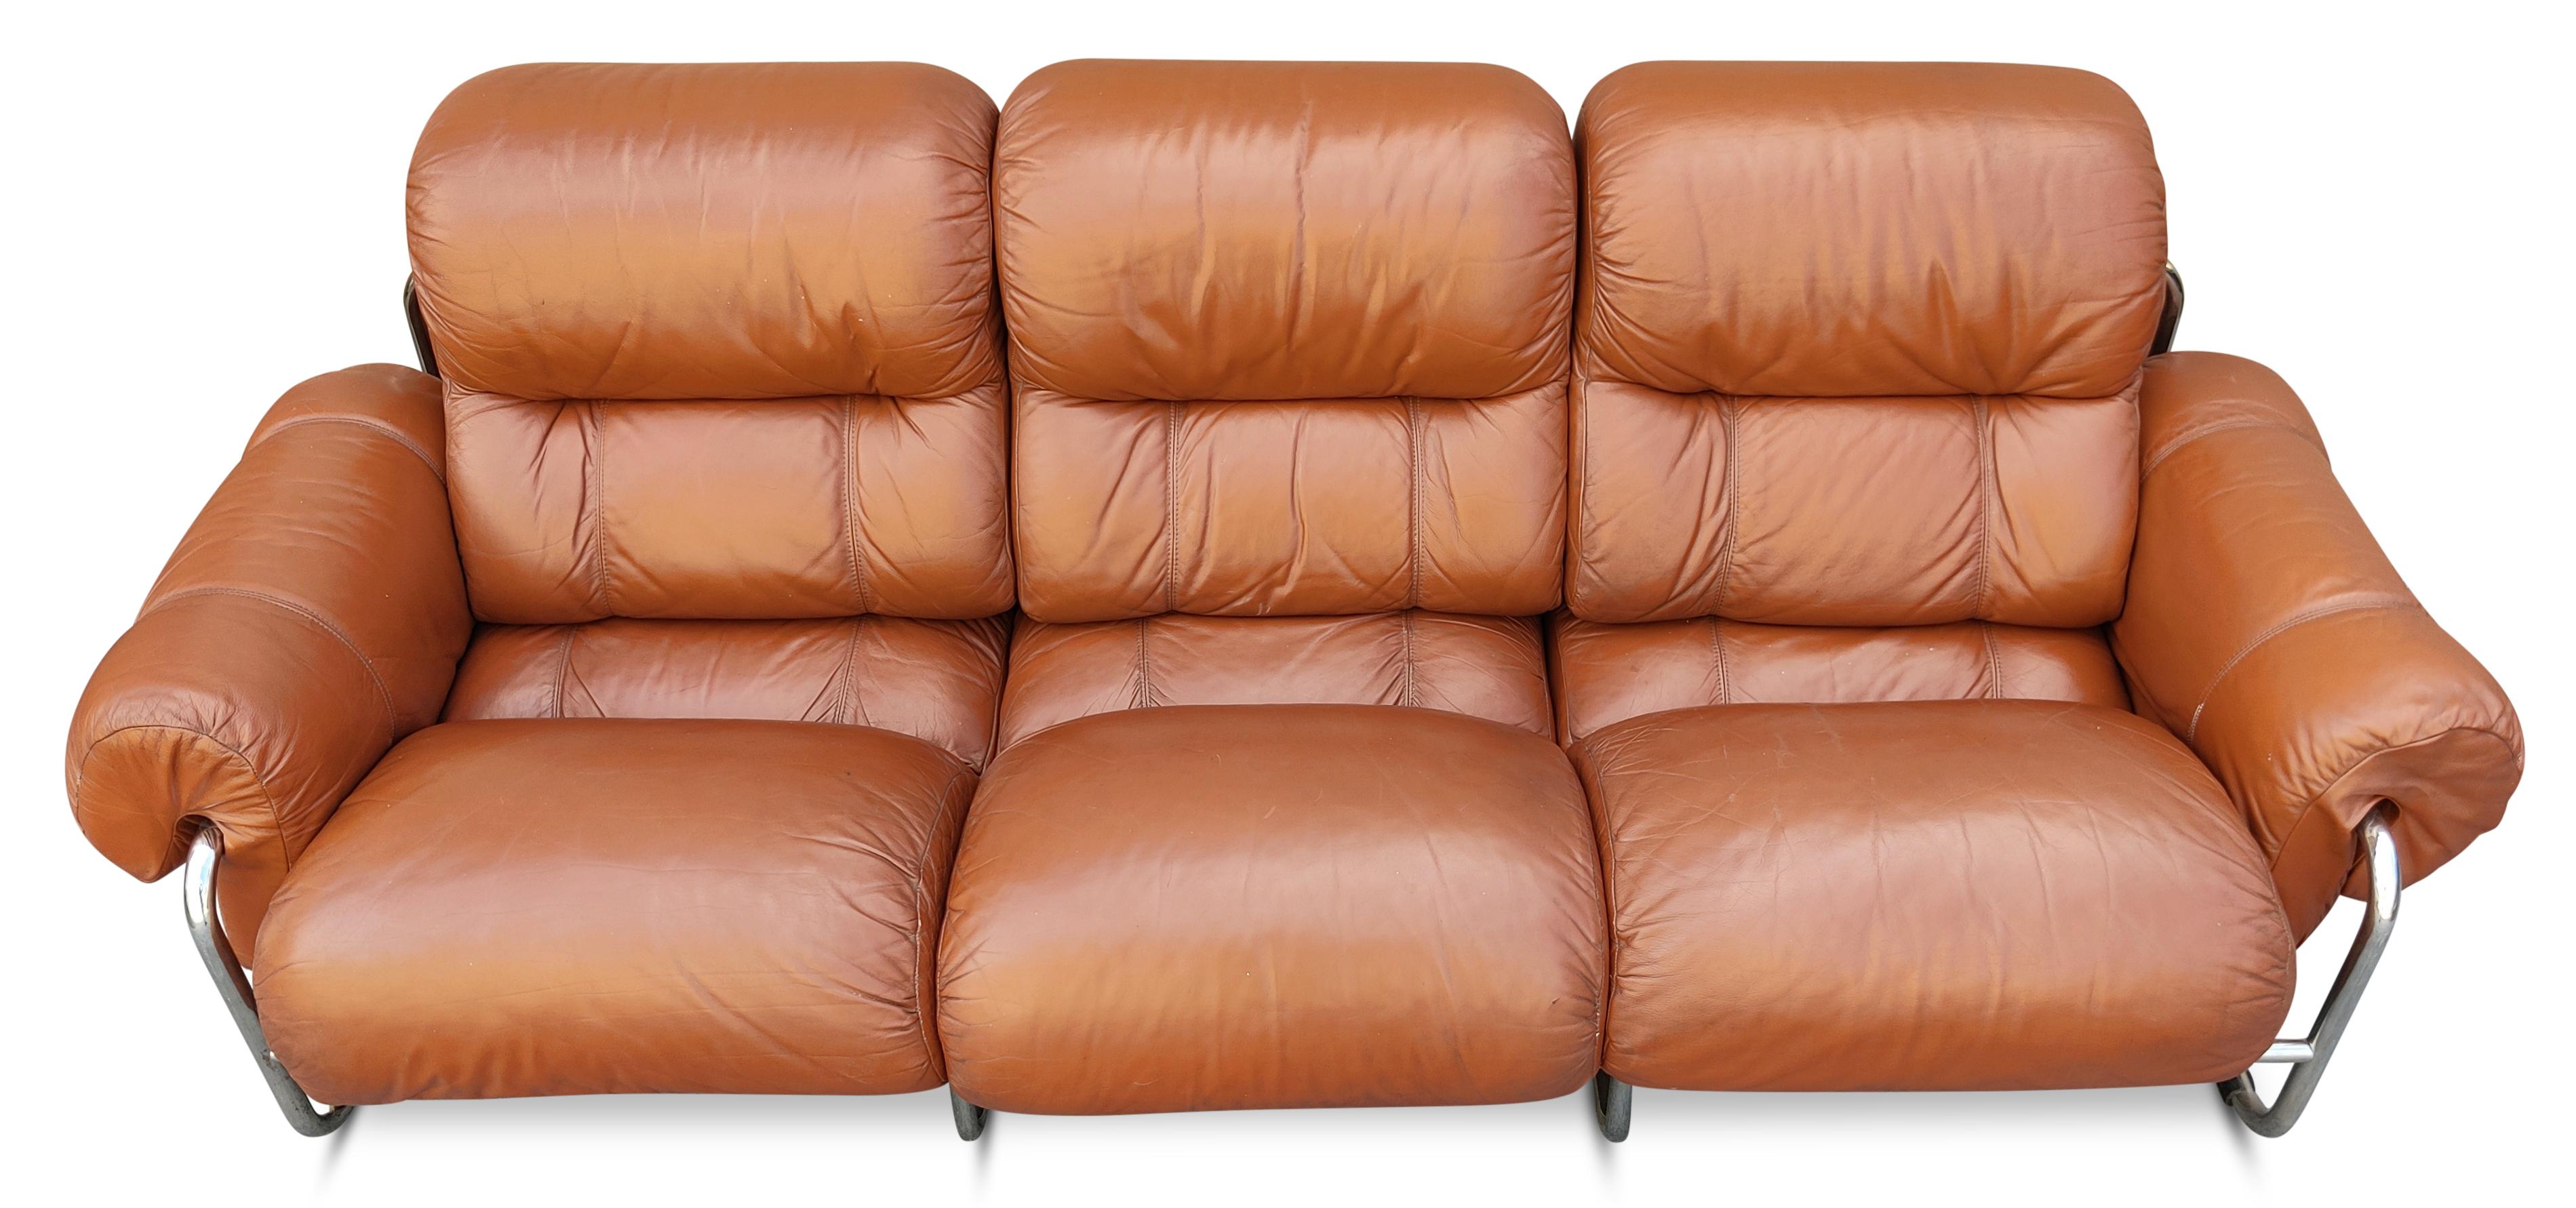 Un rare canapé 3 places avec accoudoirs a été créé dans les années 1970 par Guido Faleschini pour i4 Mariani, une filiale de design de l'estimable fabricant Pace Furniture Company. Notre exemplaire présente sa sellerie en cuir de qualité de couleur